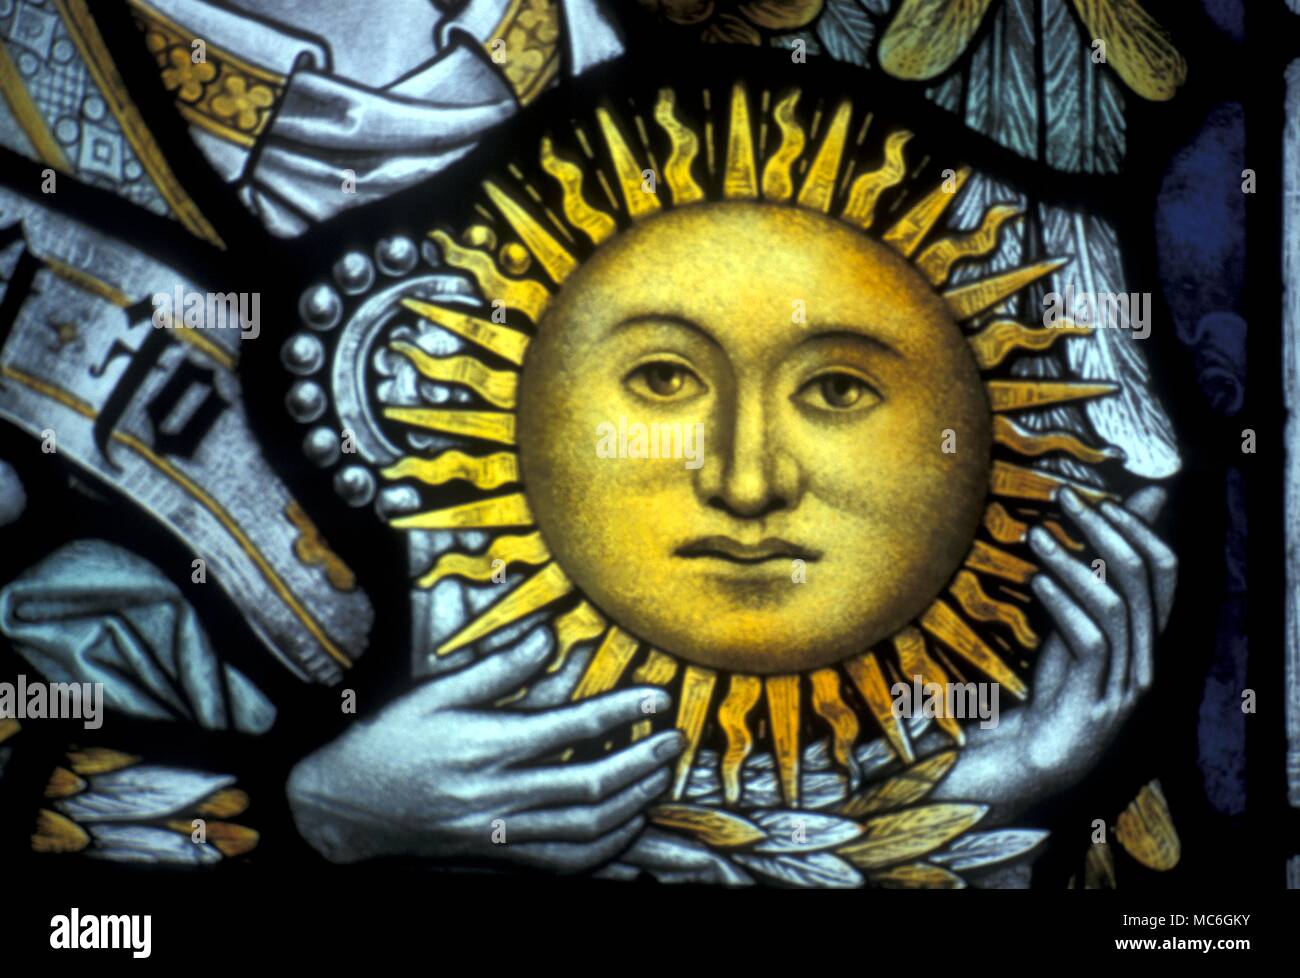 Símbolos: el Sol. La imagen de un sol radiante en manos del Arcángel Uriel, el regente de la tierra. Detalle de ventana en el claustro de la Catedral de Chester. Foto de stock